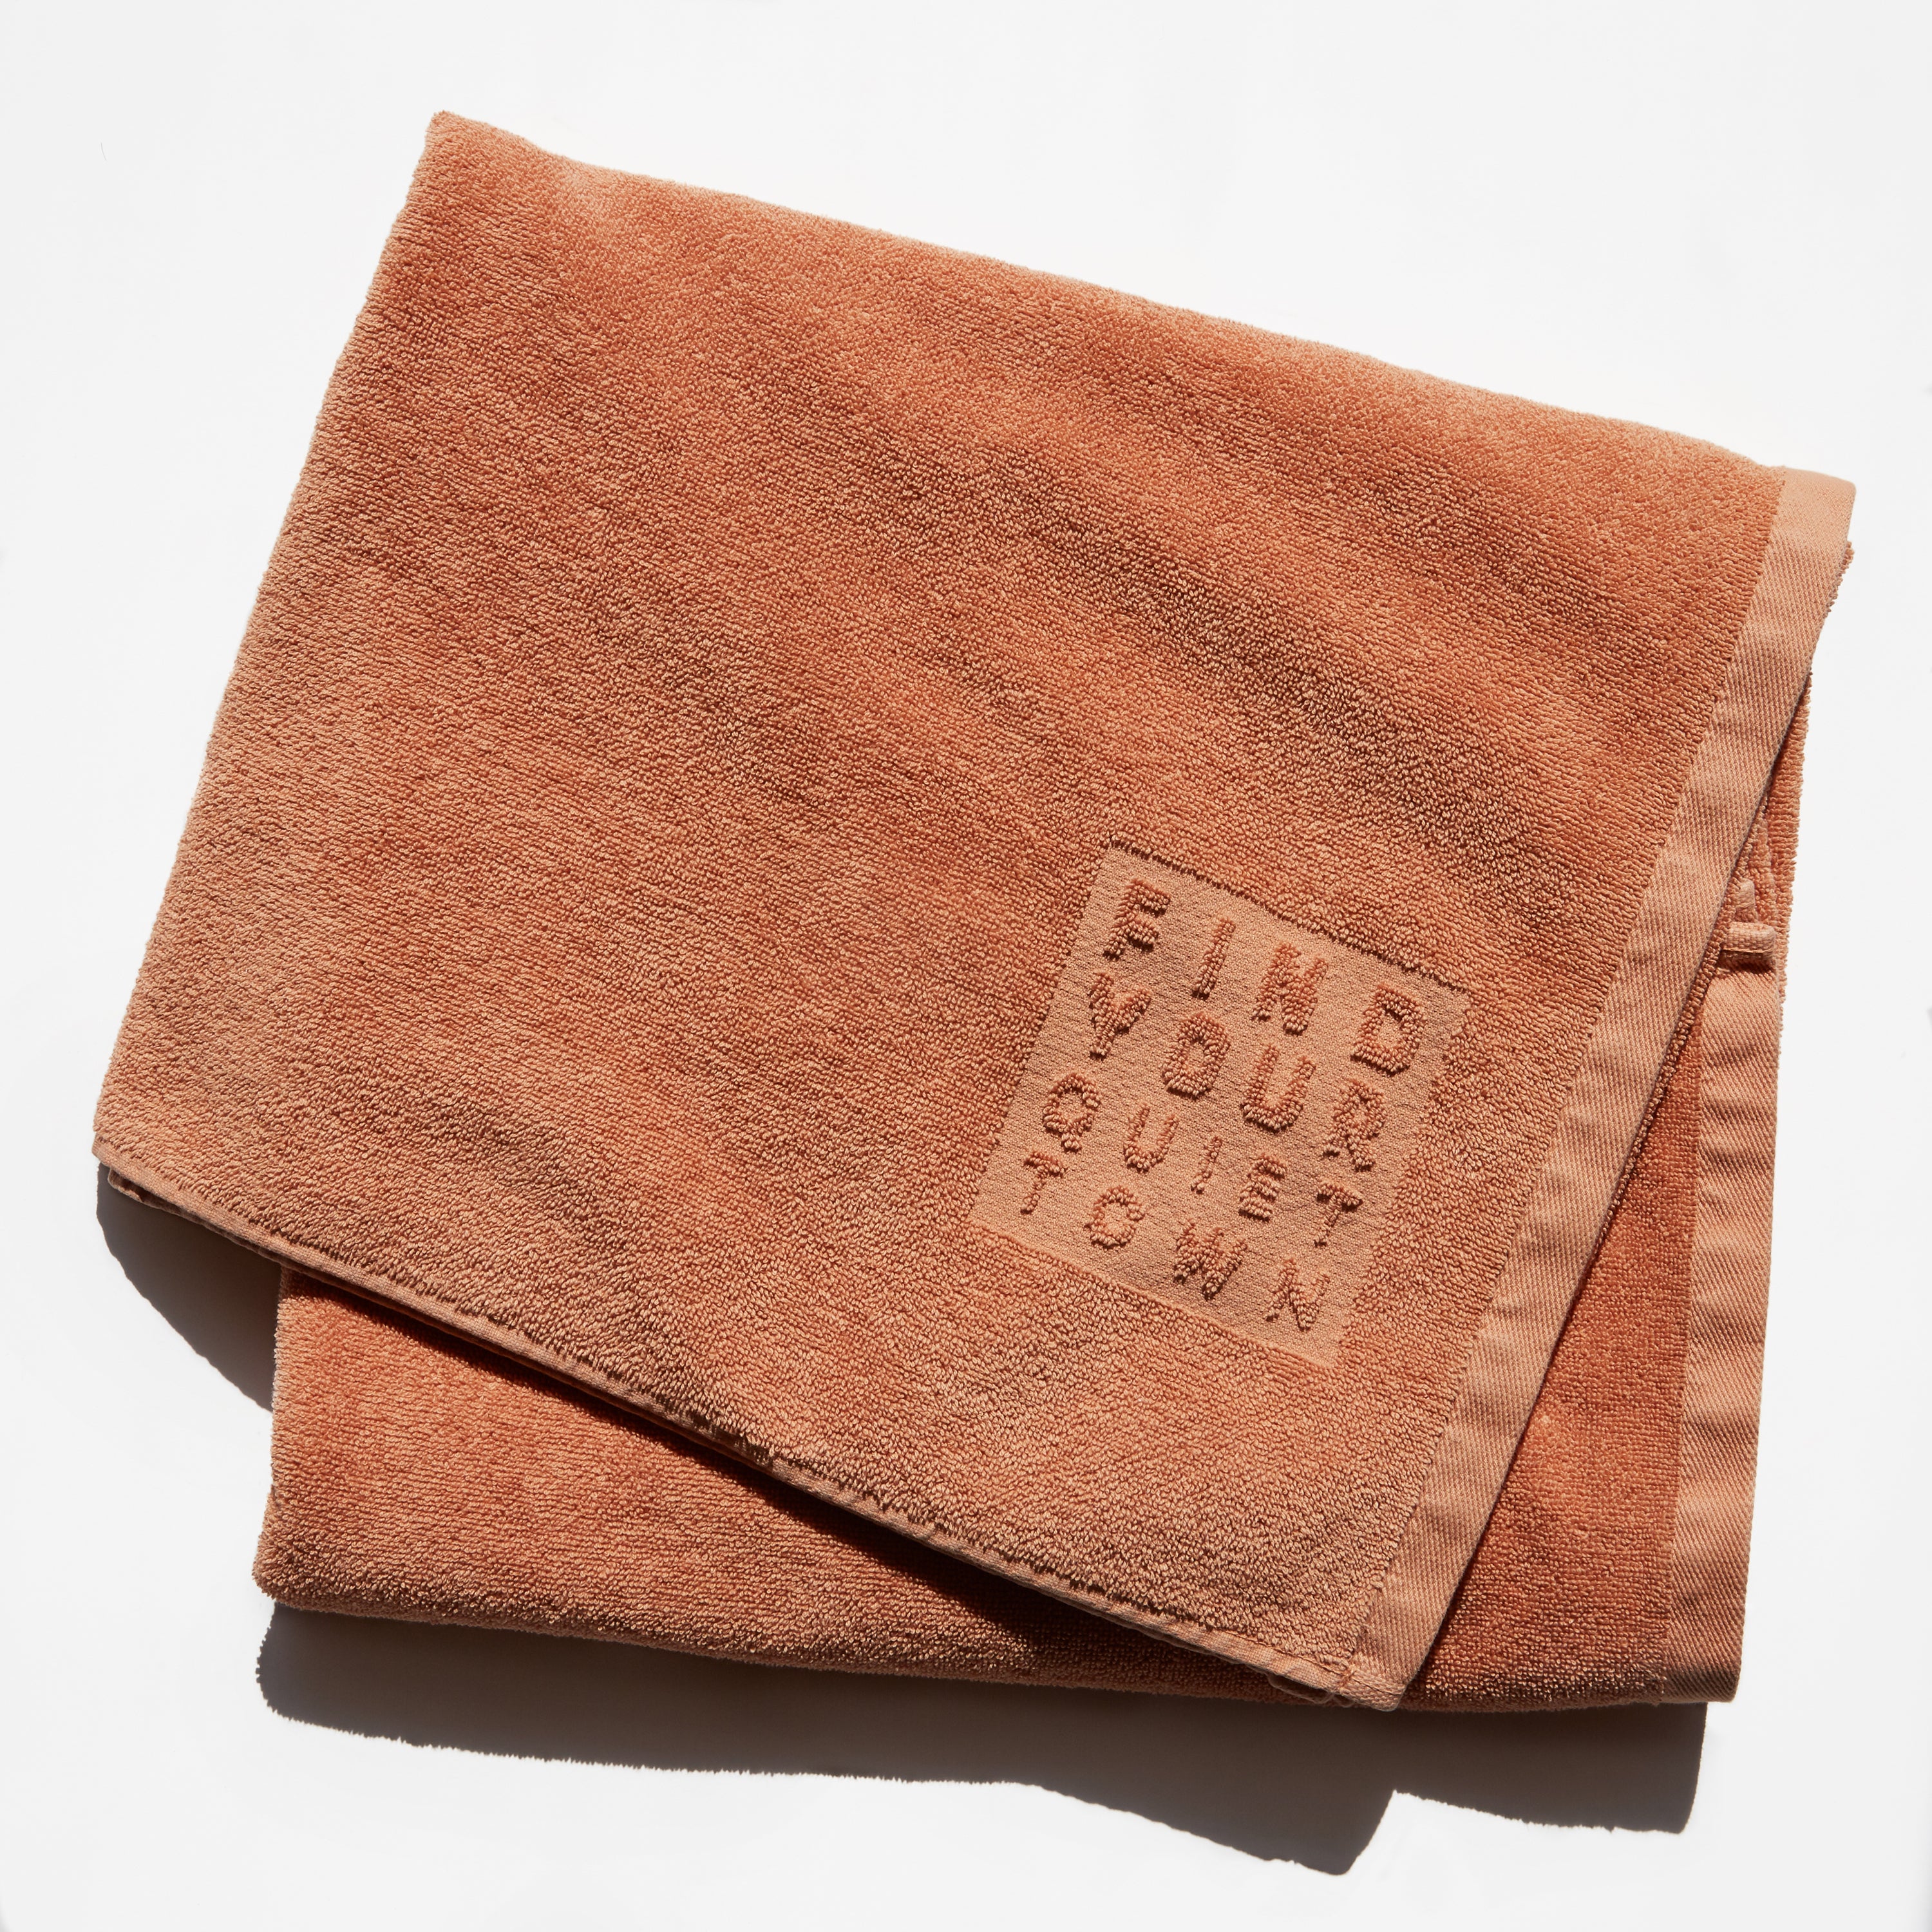 Quiet Towel Clay, Orange Cotton Bath Towel